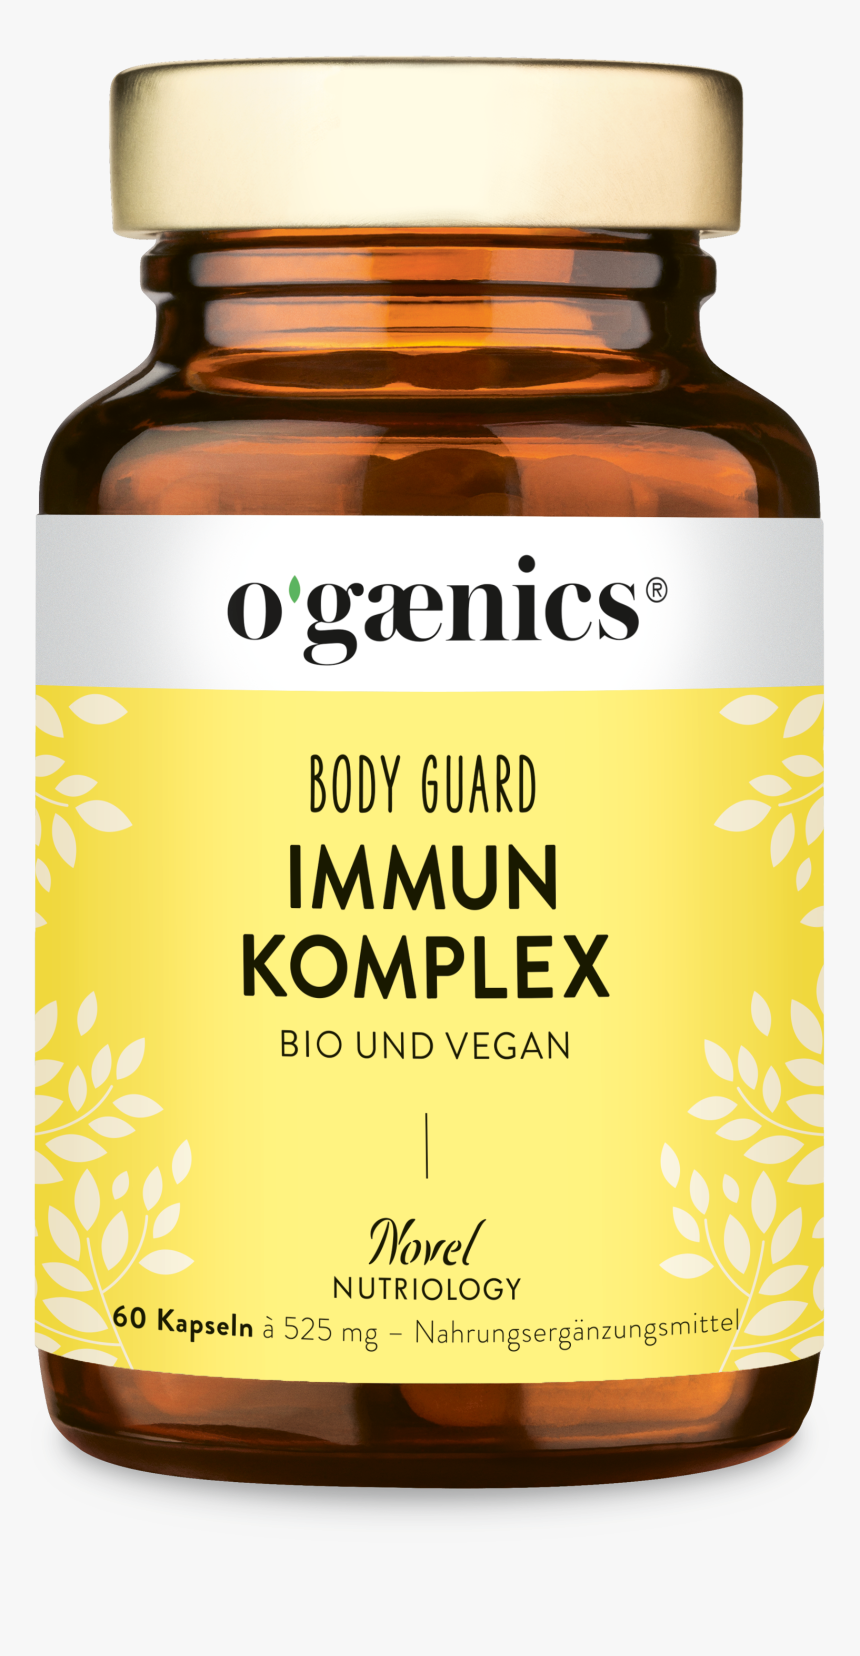 Vitamin B Komplex Ogaenics, HD Png Download, Free Download